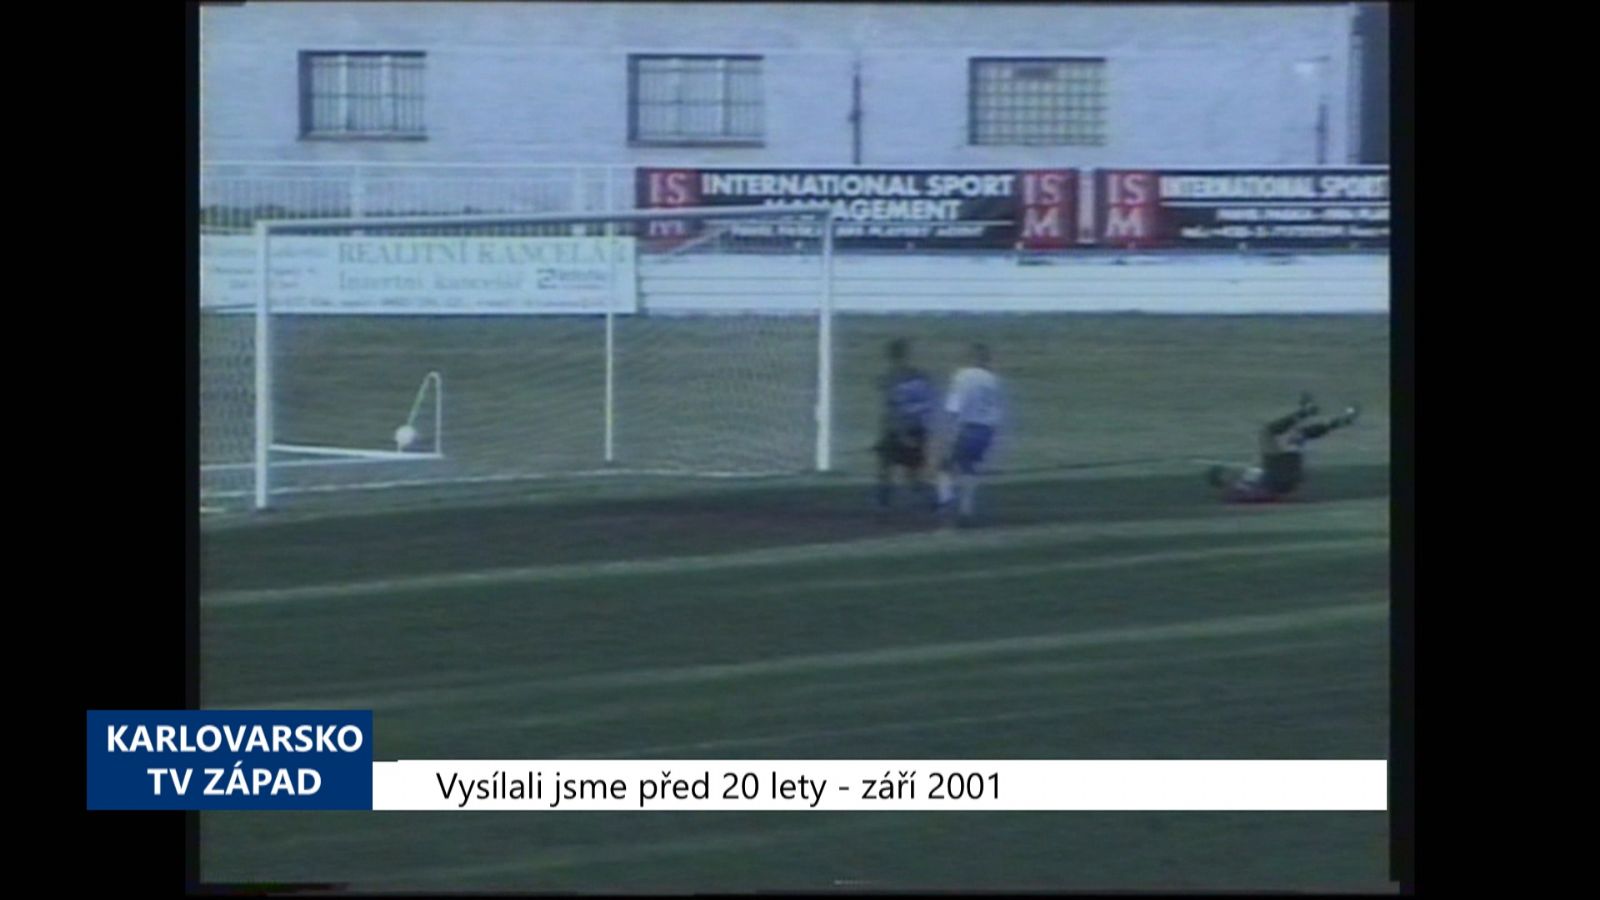 2001 – Cheb: Union vyhrál nad Poběžovicemi 4:2 (TV Západ)